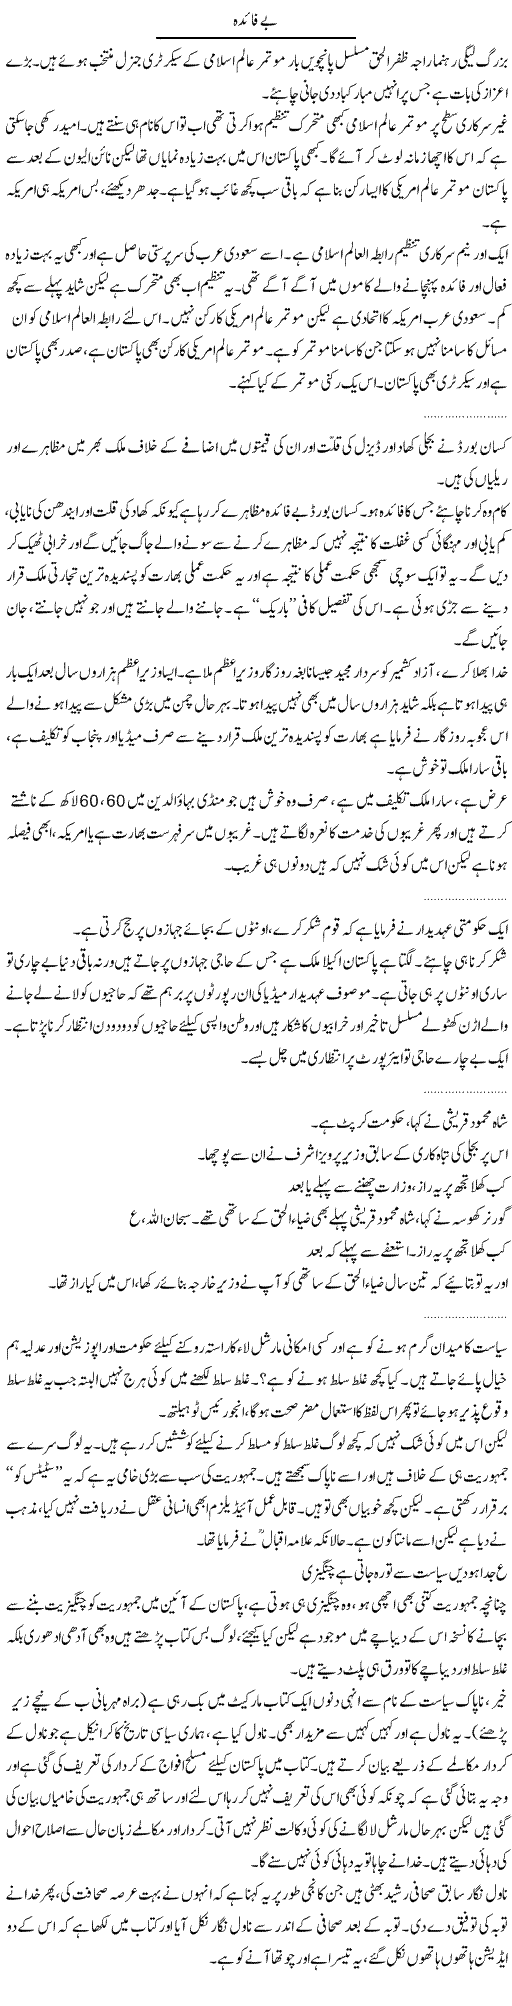 Mixed News Express Column Abdullah Tariq 17 November 2011